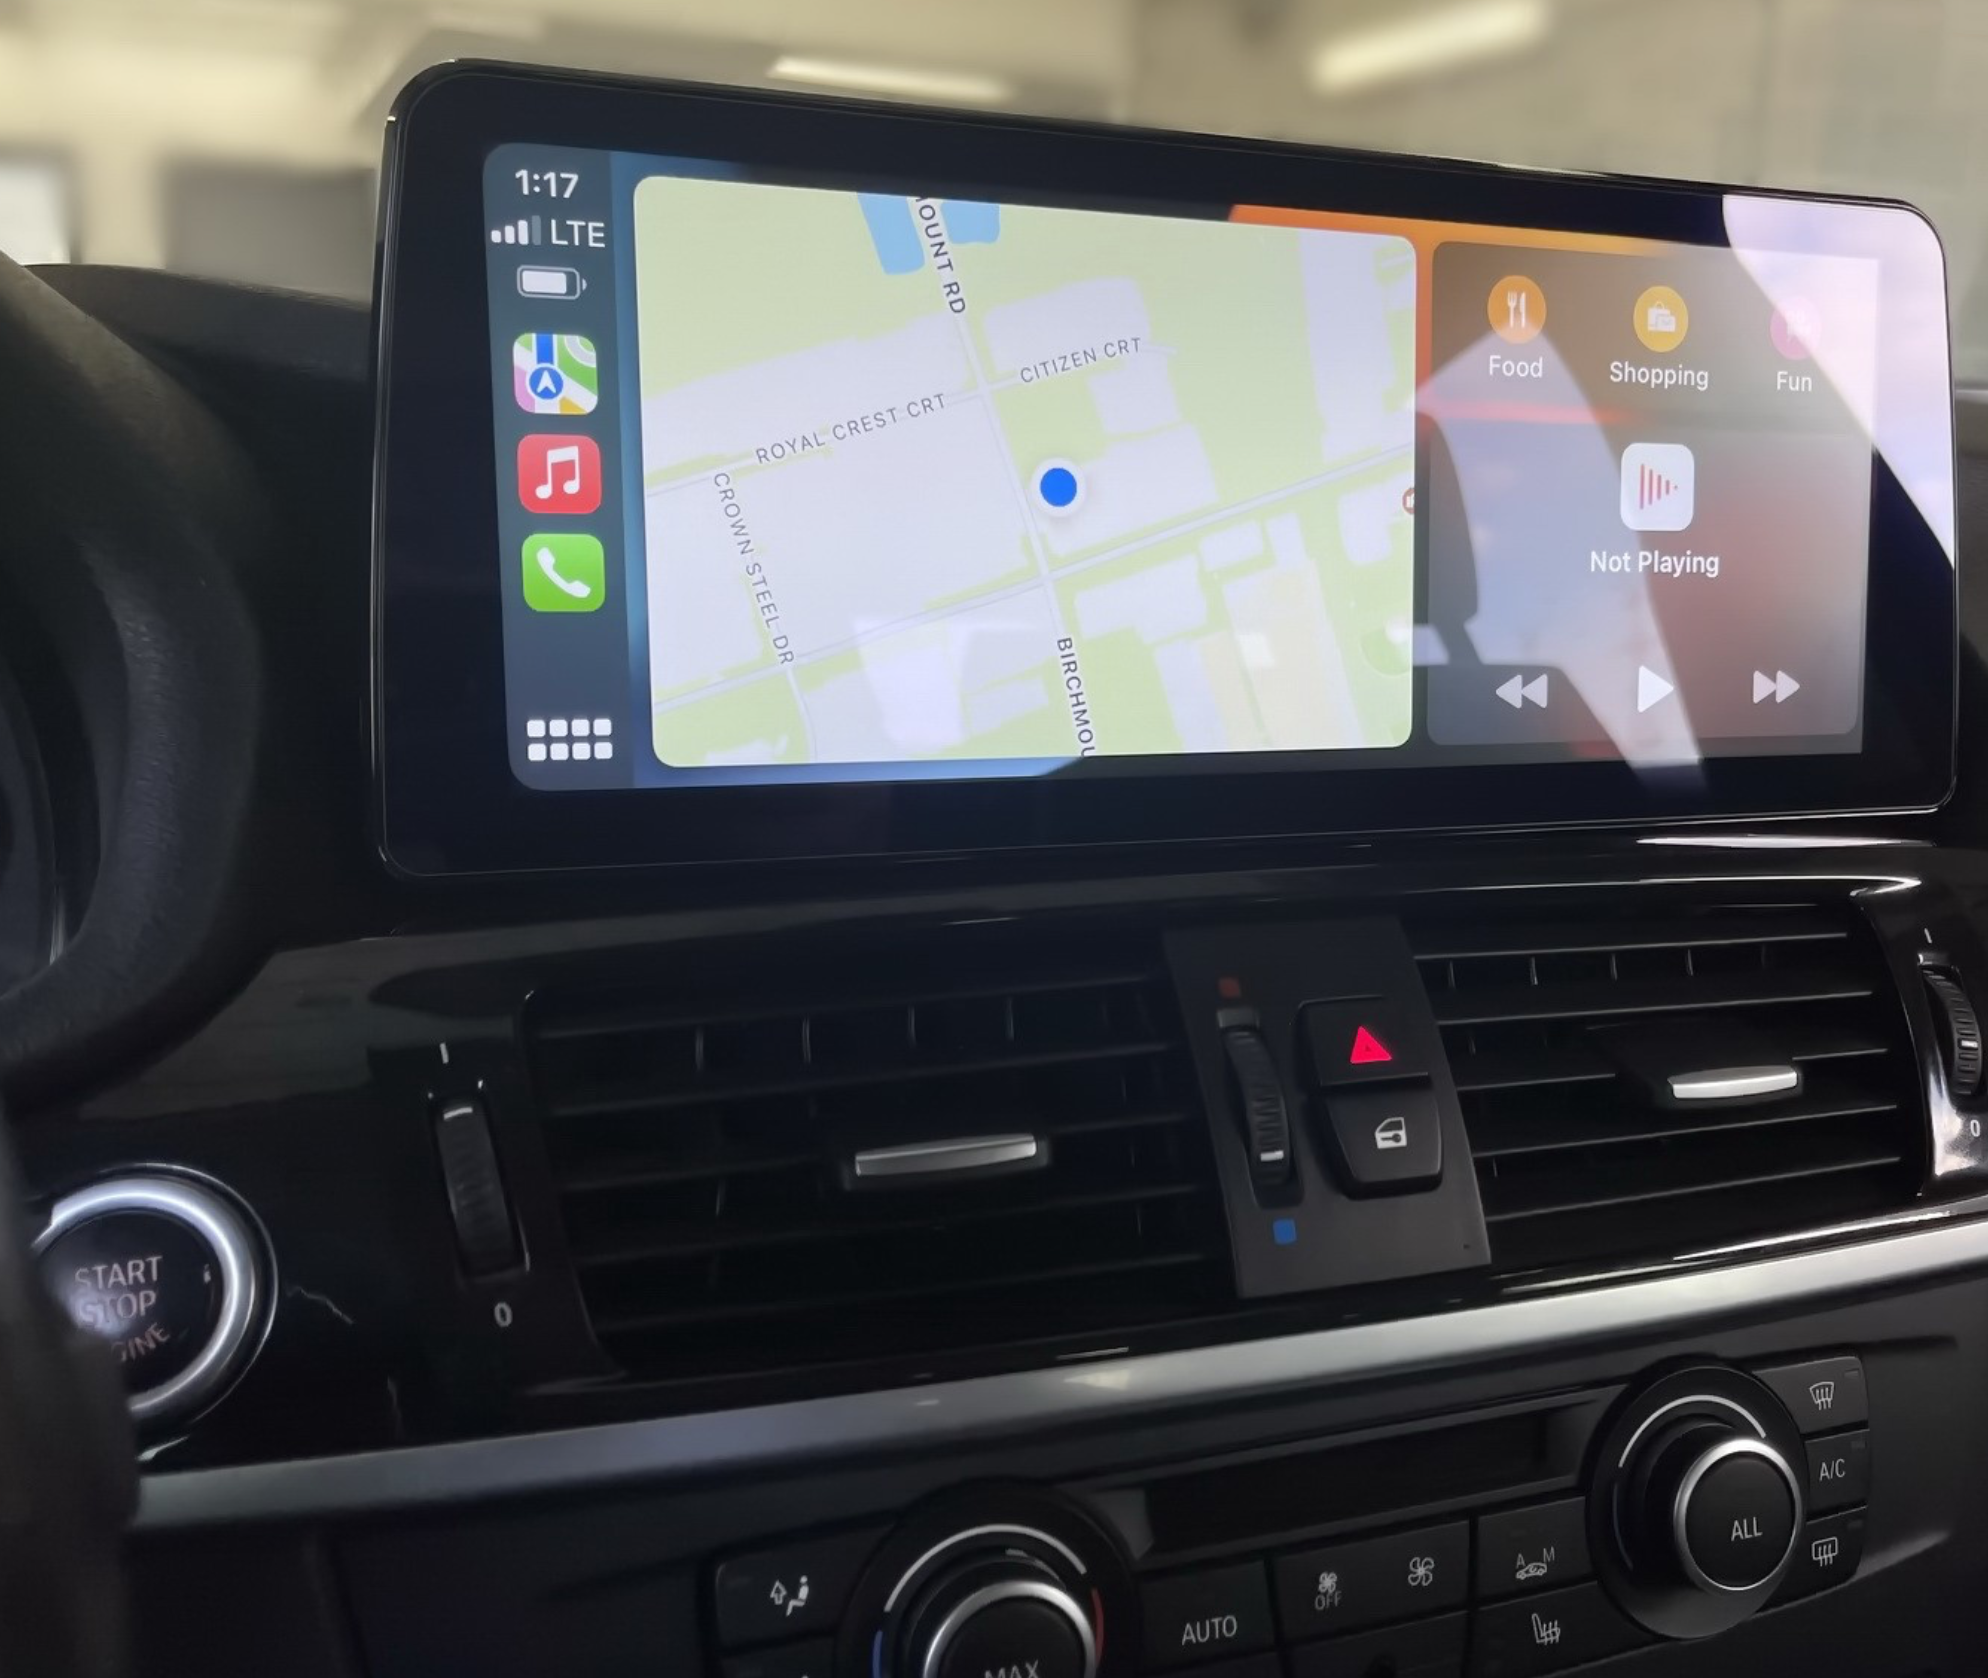 Autoradio tactile Android 13.0 et Apple Carplay sans fil BMW X3 F25 et BMW X4 F26 de 2011 à 2017